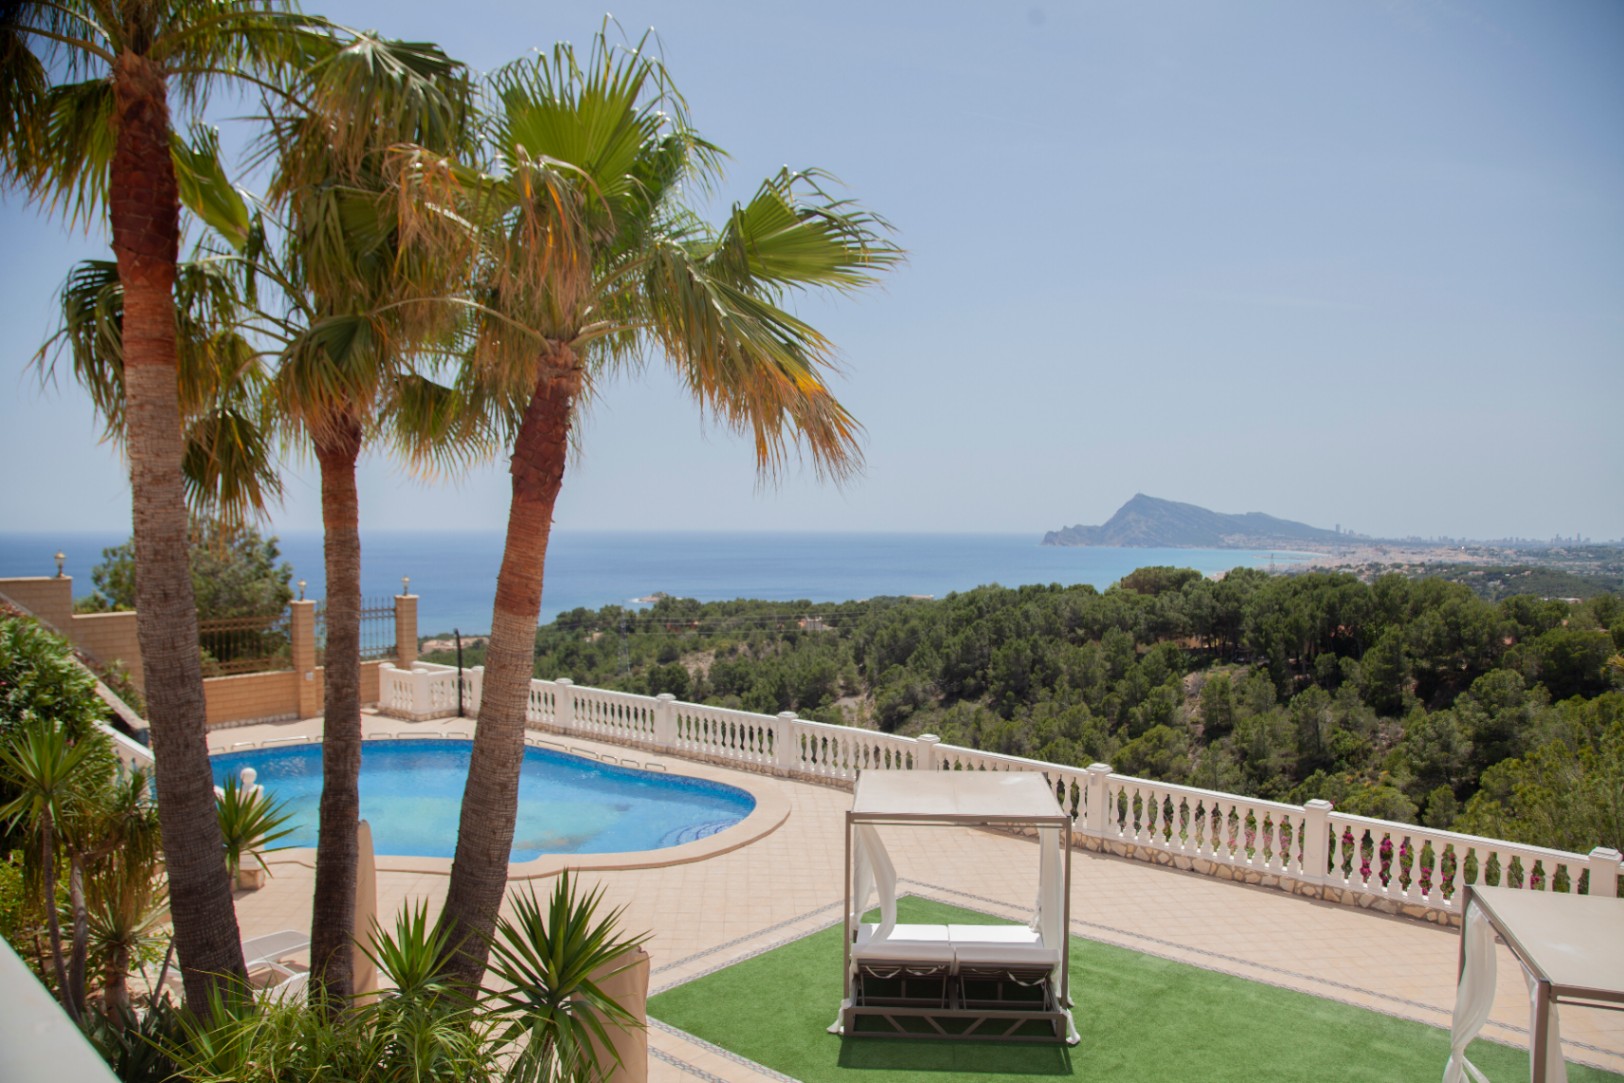 Te koop een voortreffelijk complex bestaande uit twee majestueuze villa's in het pittoreske stadje Altea, een oase van rust aan de schitterende Costa Blanca, op slechts 60 km van de luchthaven van Alicante.